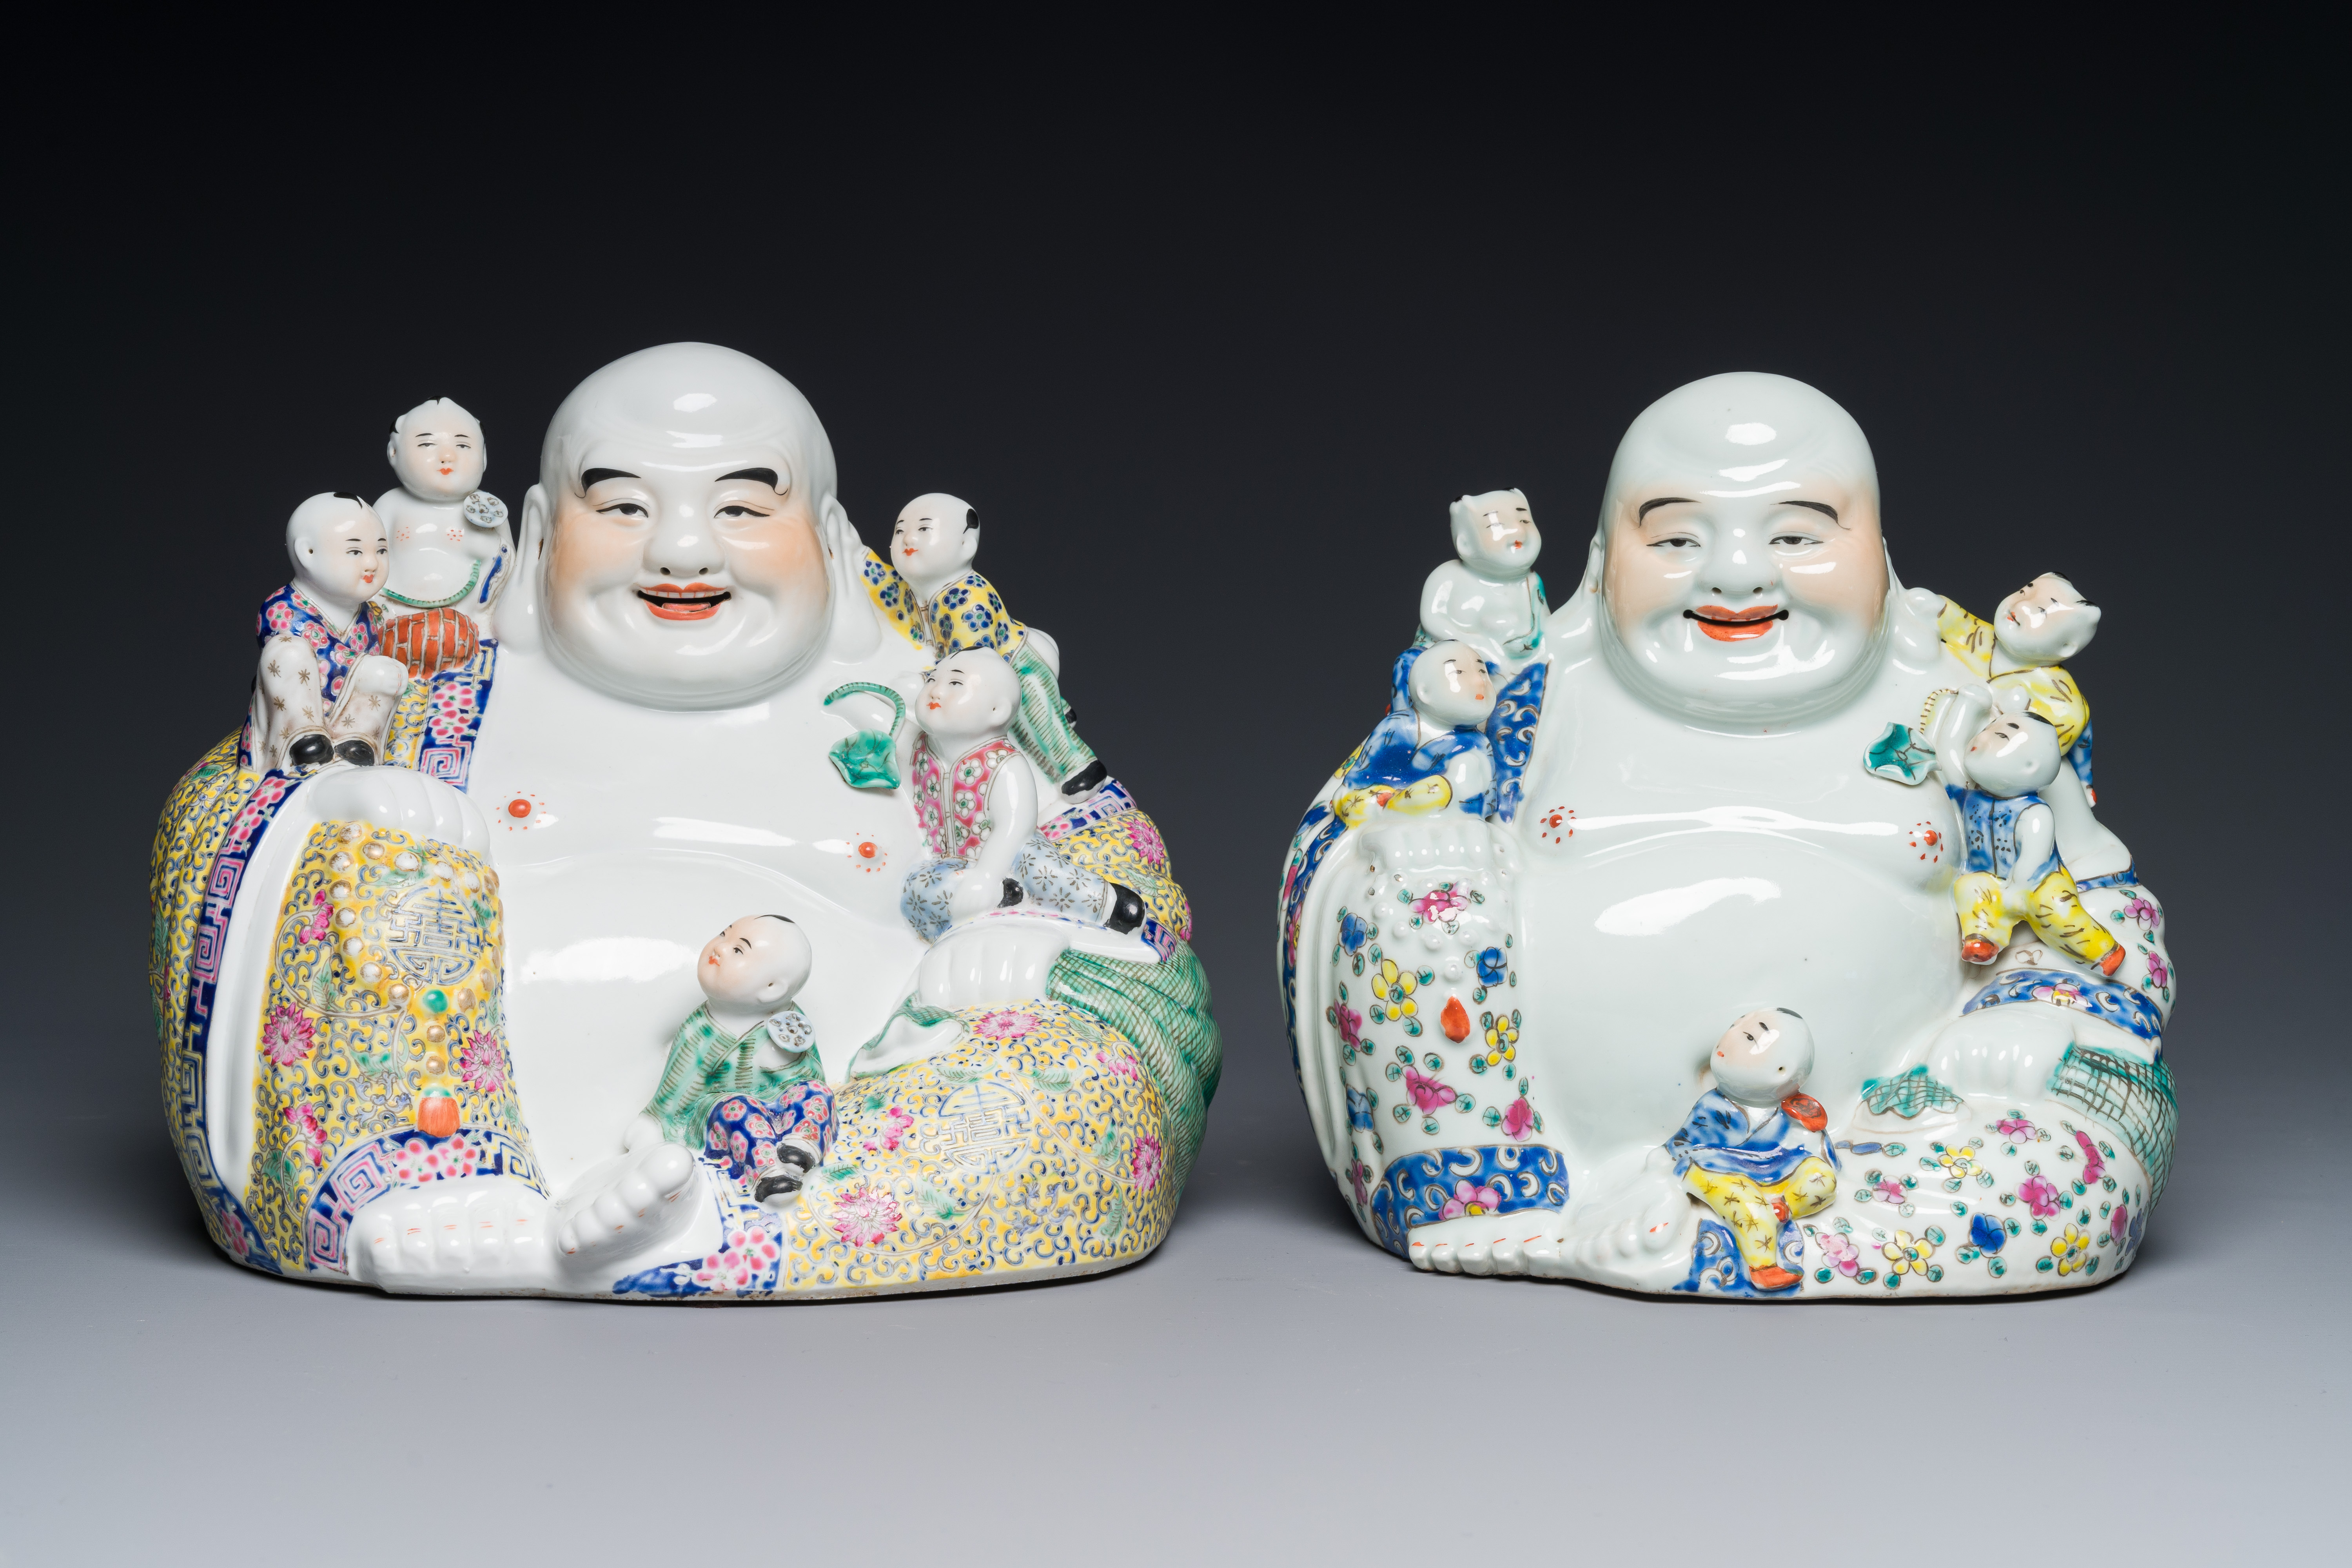 Two Chinese famille rose figures of Buddha, Zhu Mao Ji Zao æœ±èŒ‚è¨˜é€  and Zhu Yitai æœ±ç¾©æ³° mark